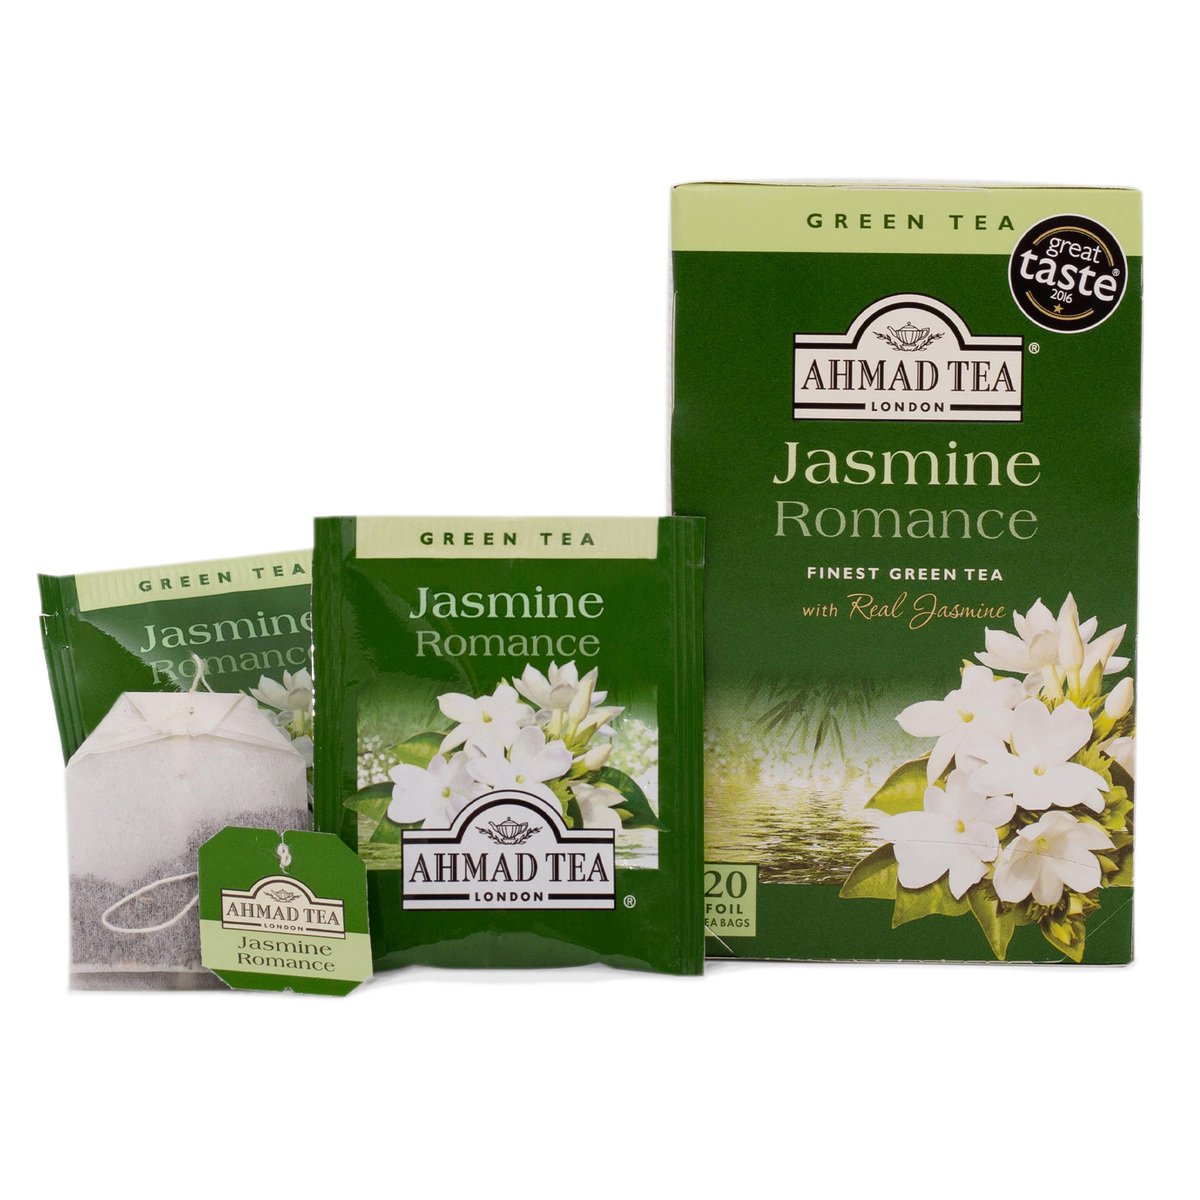 Ahmad Tea Jasmine Romance Green Tea 20 Teabags 40 g